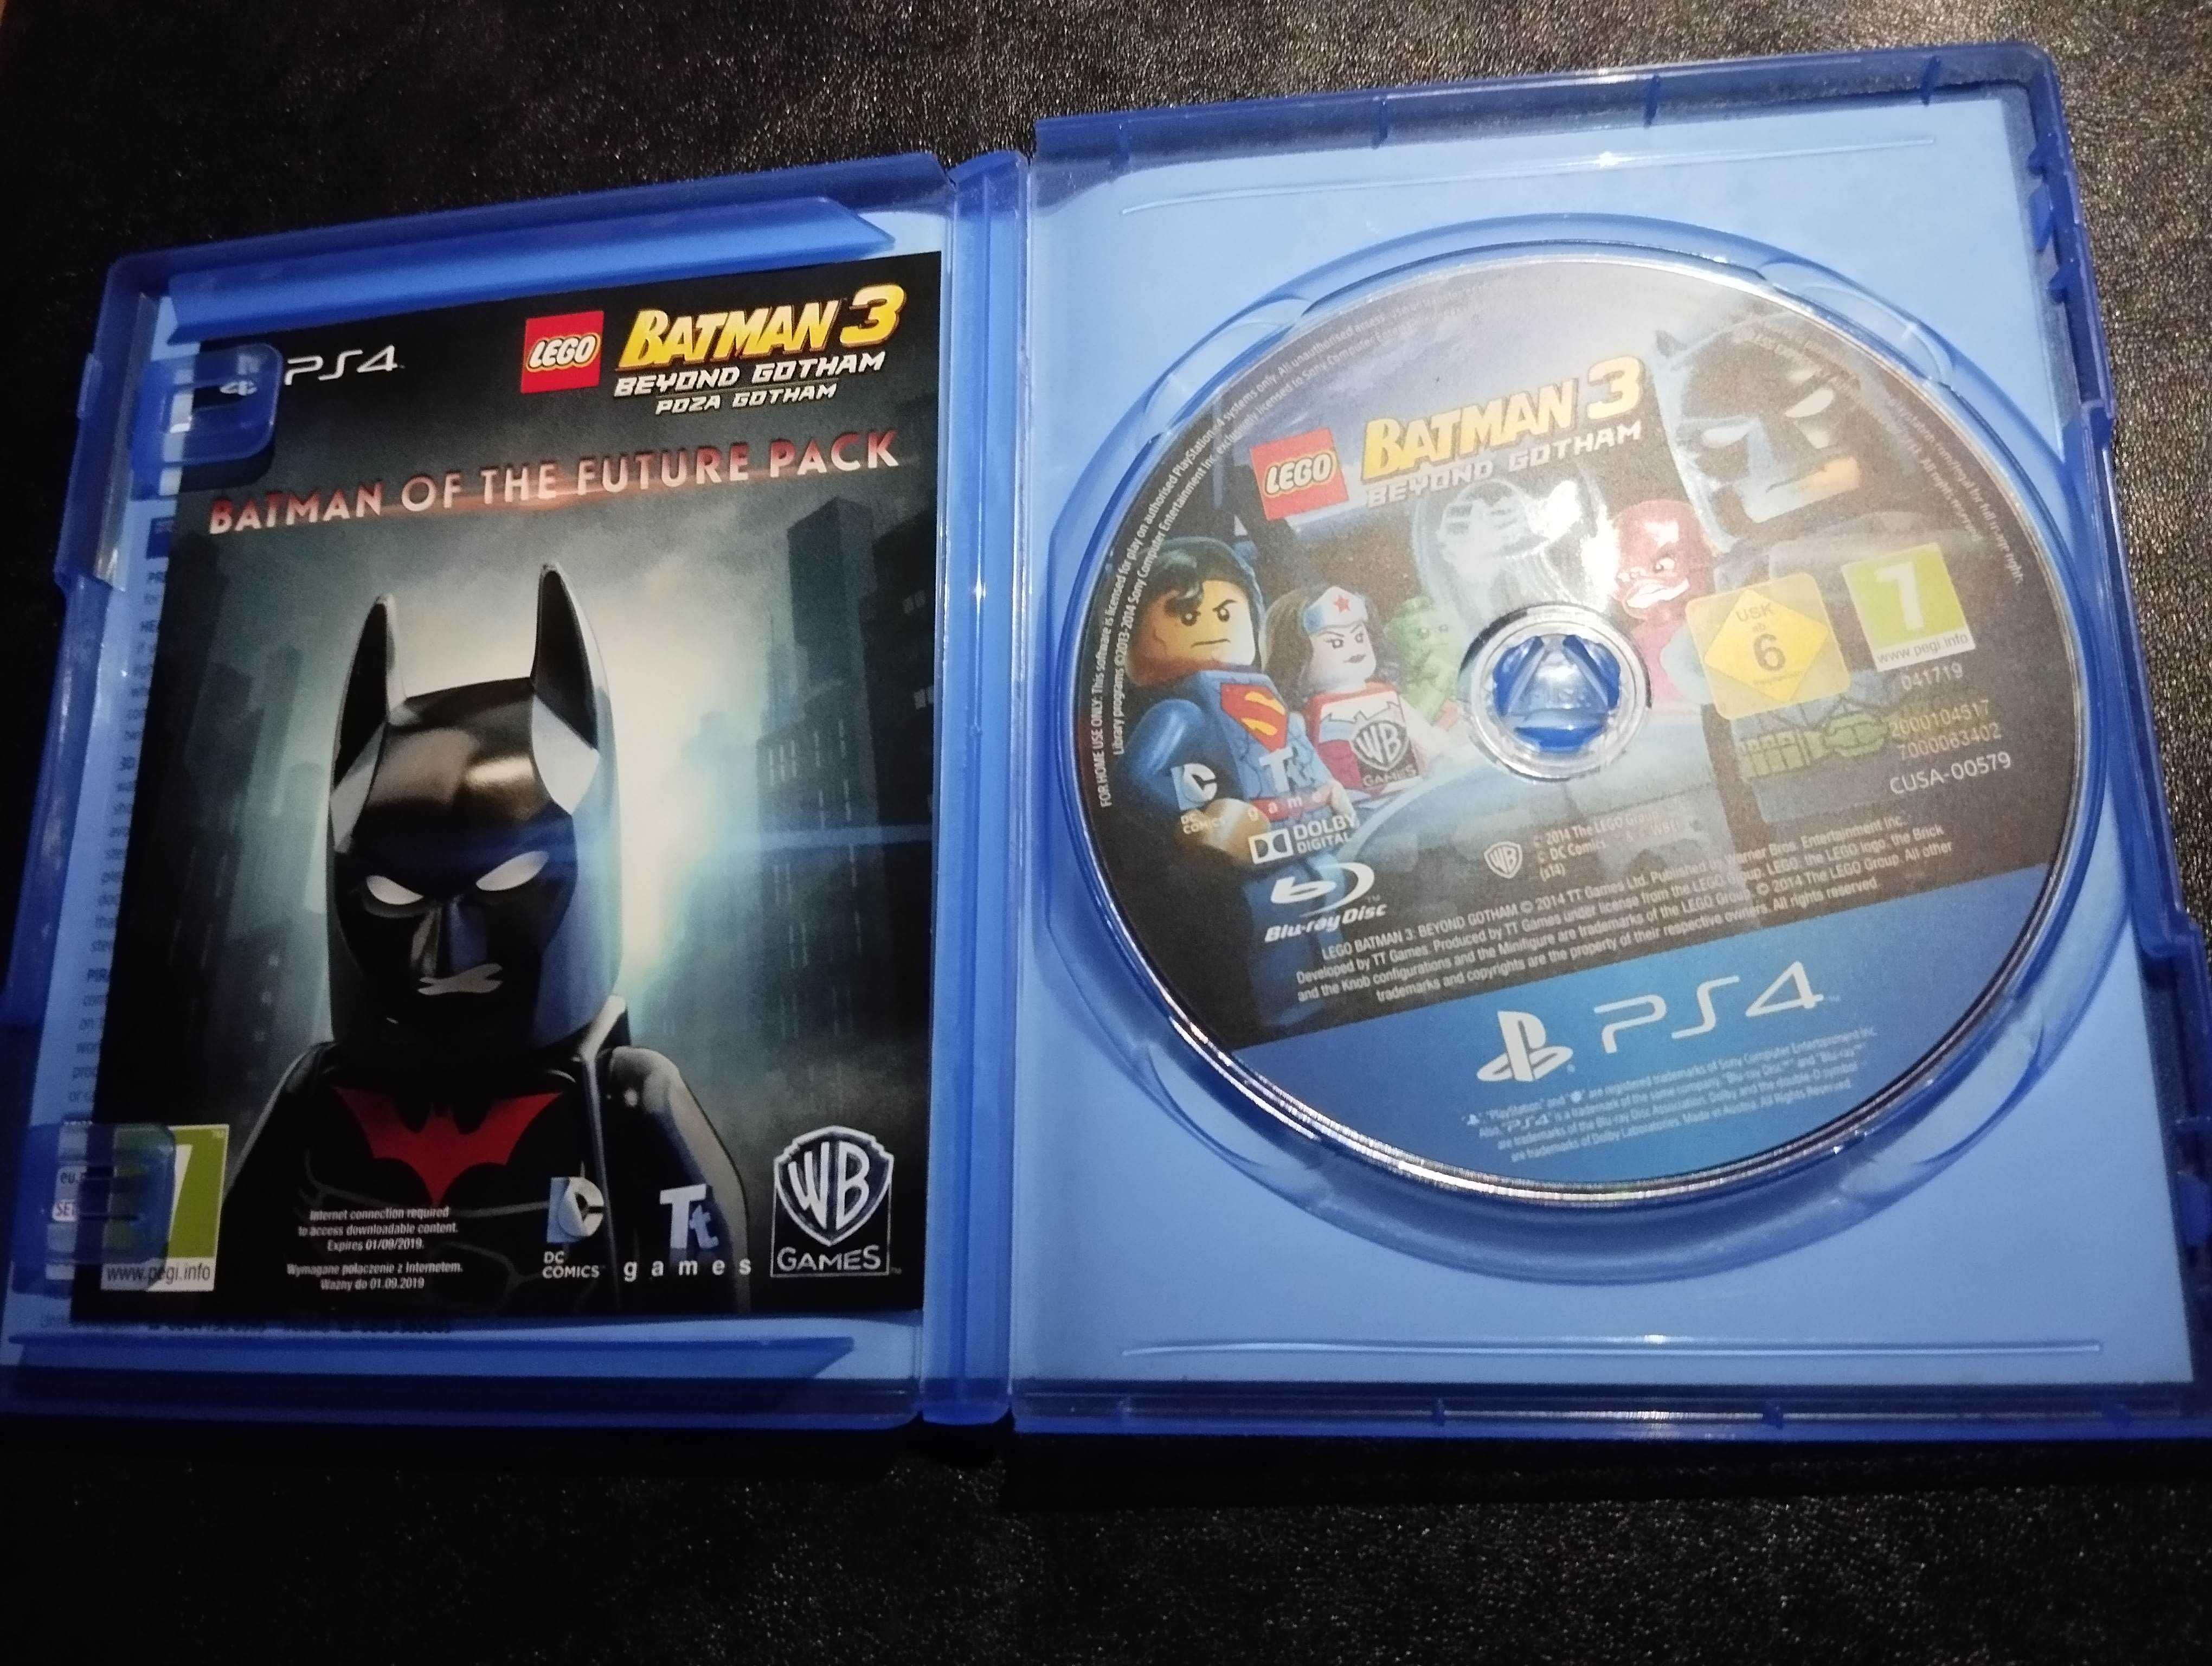 LEGO Batman 3 Poza Gotham - PS4 PS5 - j.polski, duży wybór gier